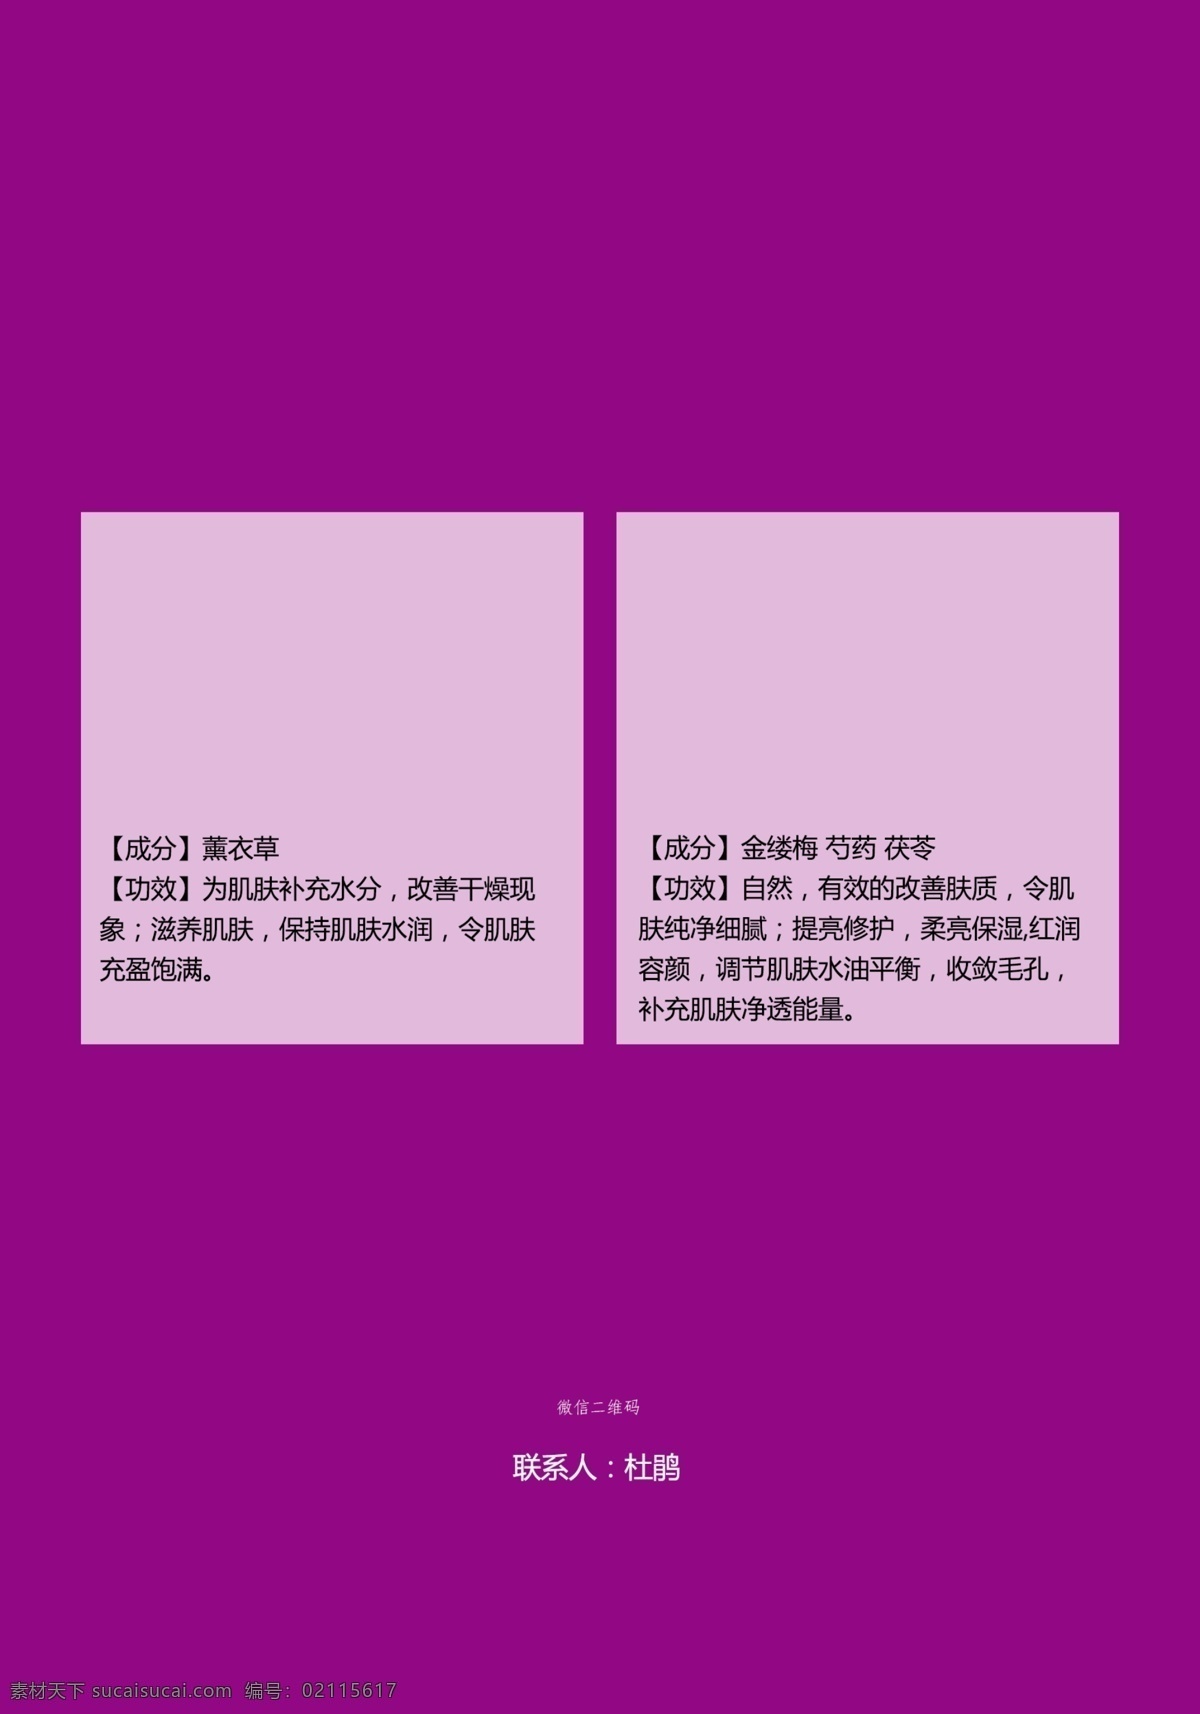 宣传单 梦幻底色 a3 紫色 清晰 文化艺术